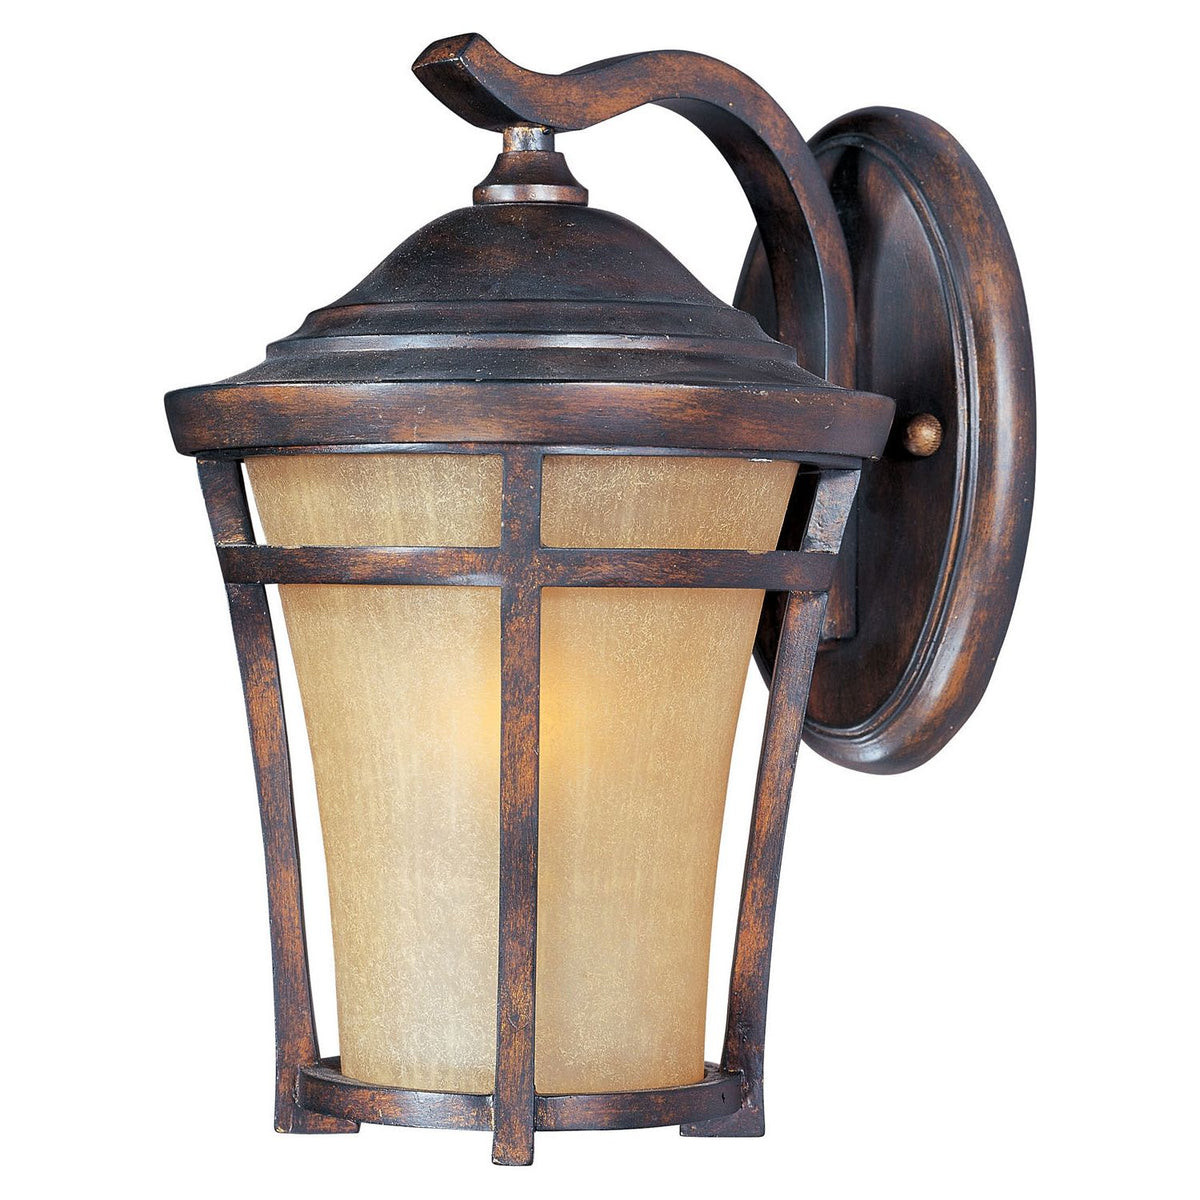 Maxim - 40164GFCO - One Light Outdoor Wall Lantern - Balboa VX - Copper Oxide